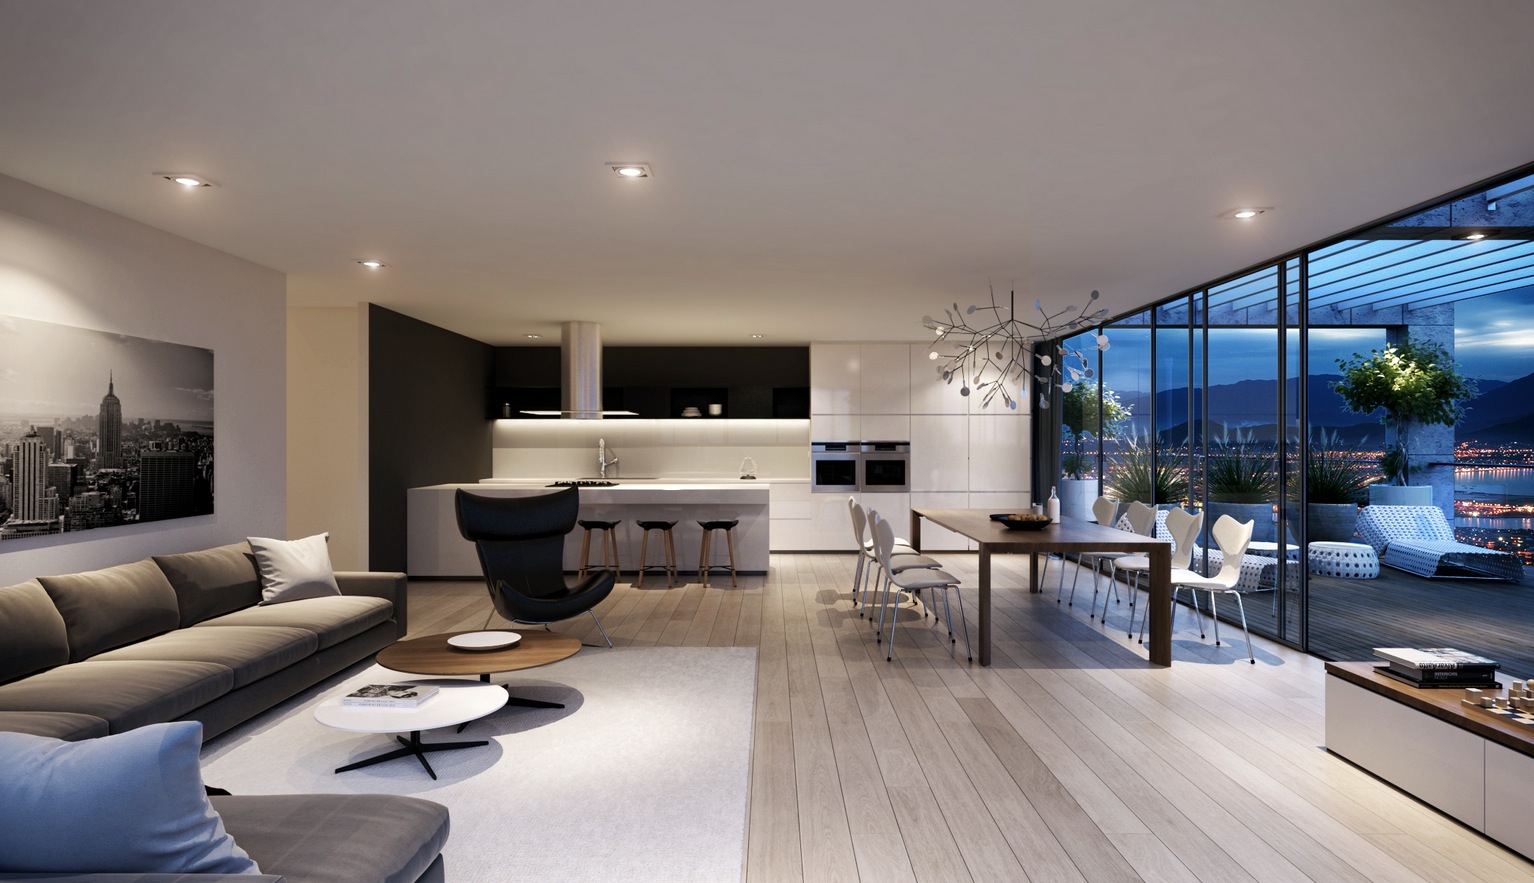 15 Contemporary Style Home Interior Design Ideas For Each Room | Adria